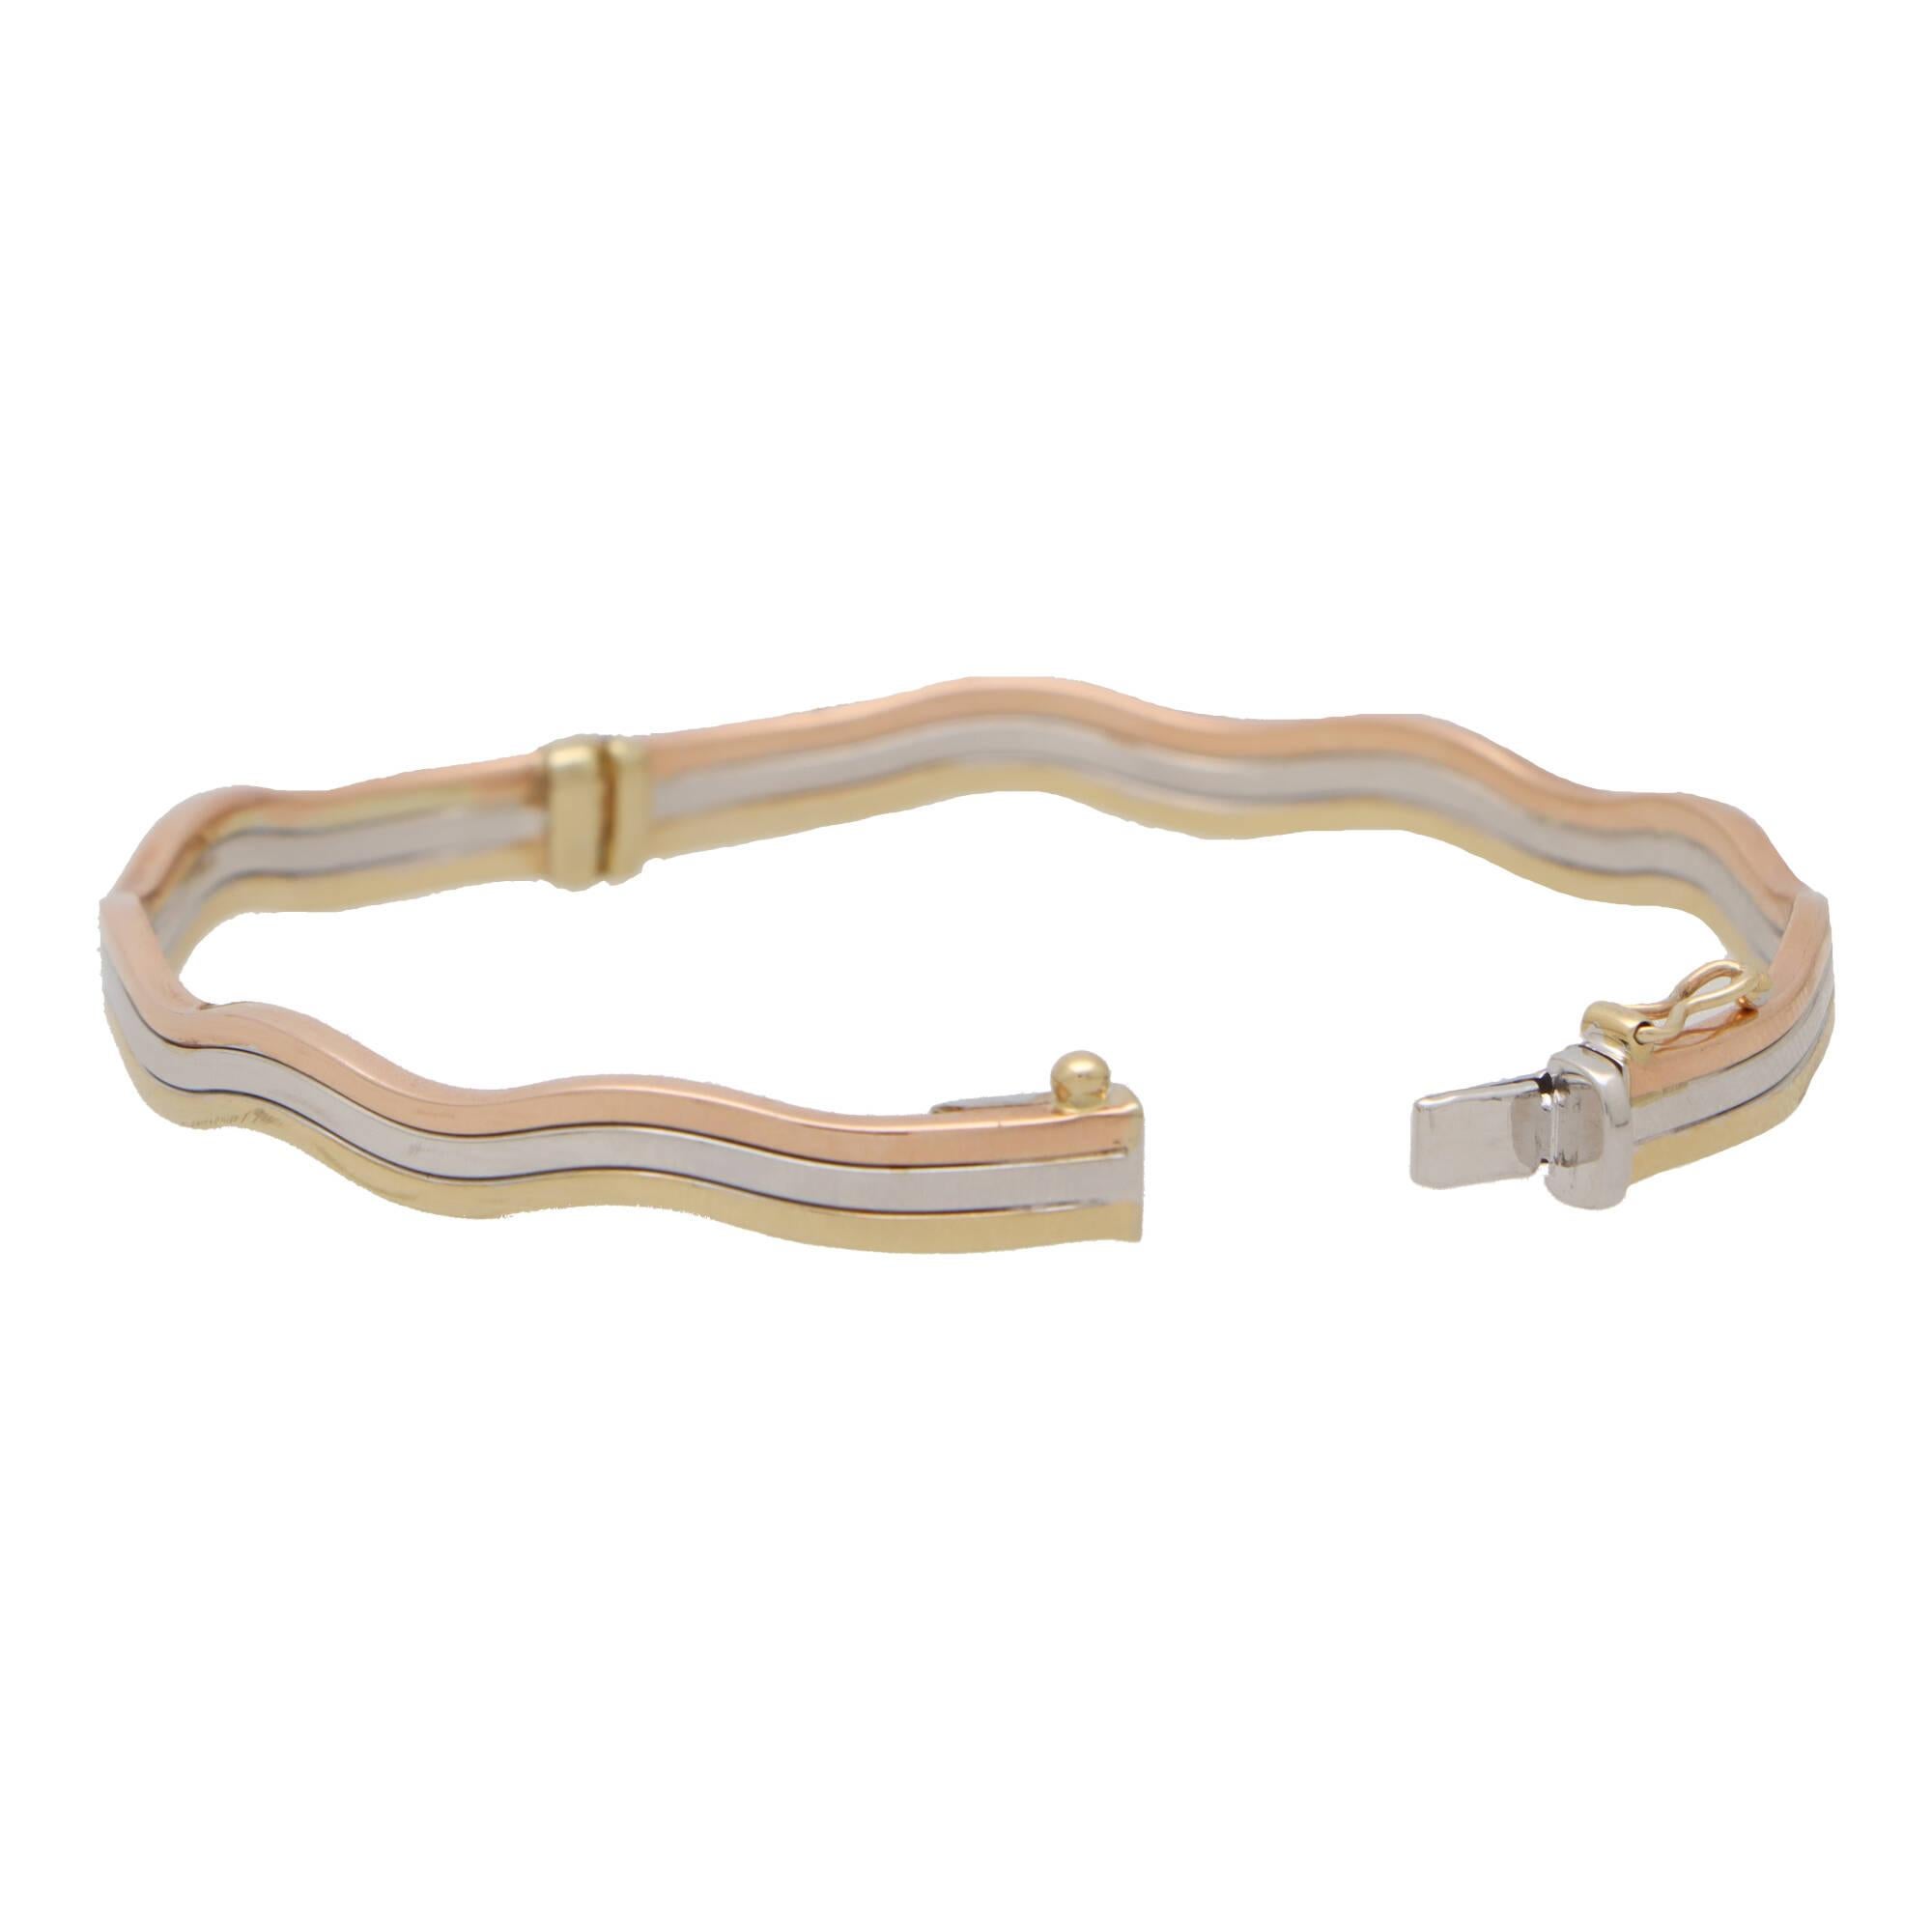  Magnifique bracelet trinitaire à charnière en or jaune, rose et blanc 9k.

Le bracelet est composé de trois bracelets tricolores soudés qui sont tous imbriqués les uns dans les autres dans un design unique de trinité en forme de vague. Si vous